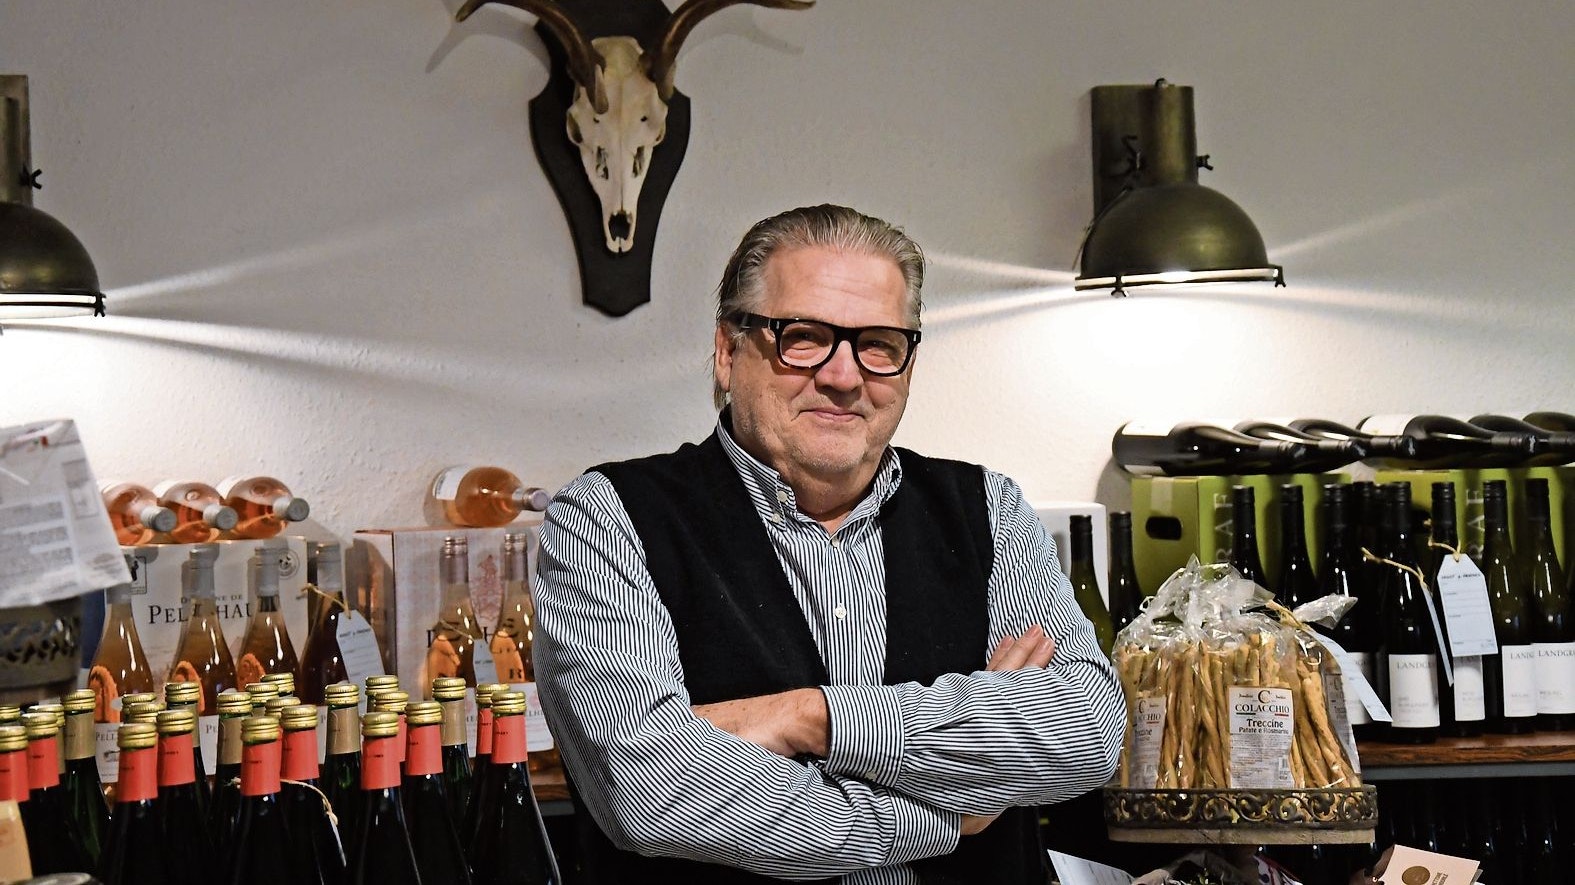 Einrichtung selbst gebaut: Ernst Klapp erlebt seinen „dritten Frühling“ als Weinhändler. Foto: Kreke